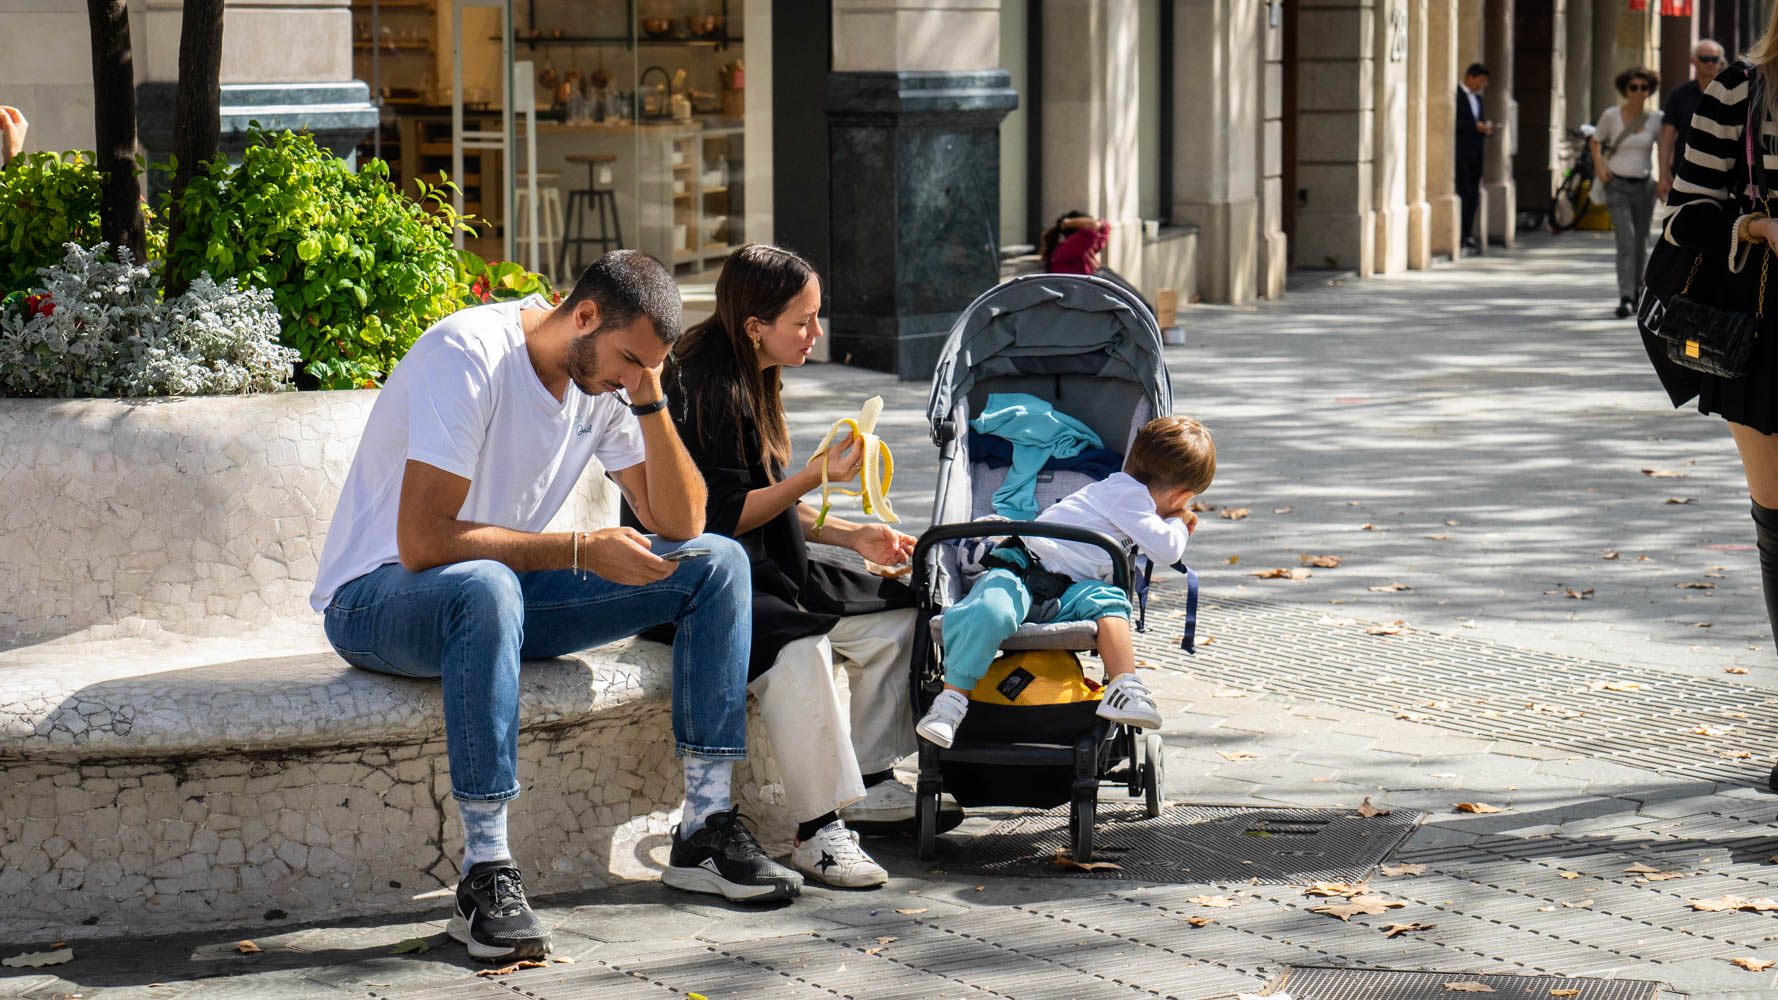 Famille parents enfants bebe gens rue touristes passants Barcelone Photo Clementine Laurent Equinox 51 30